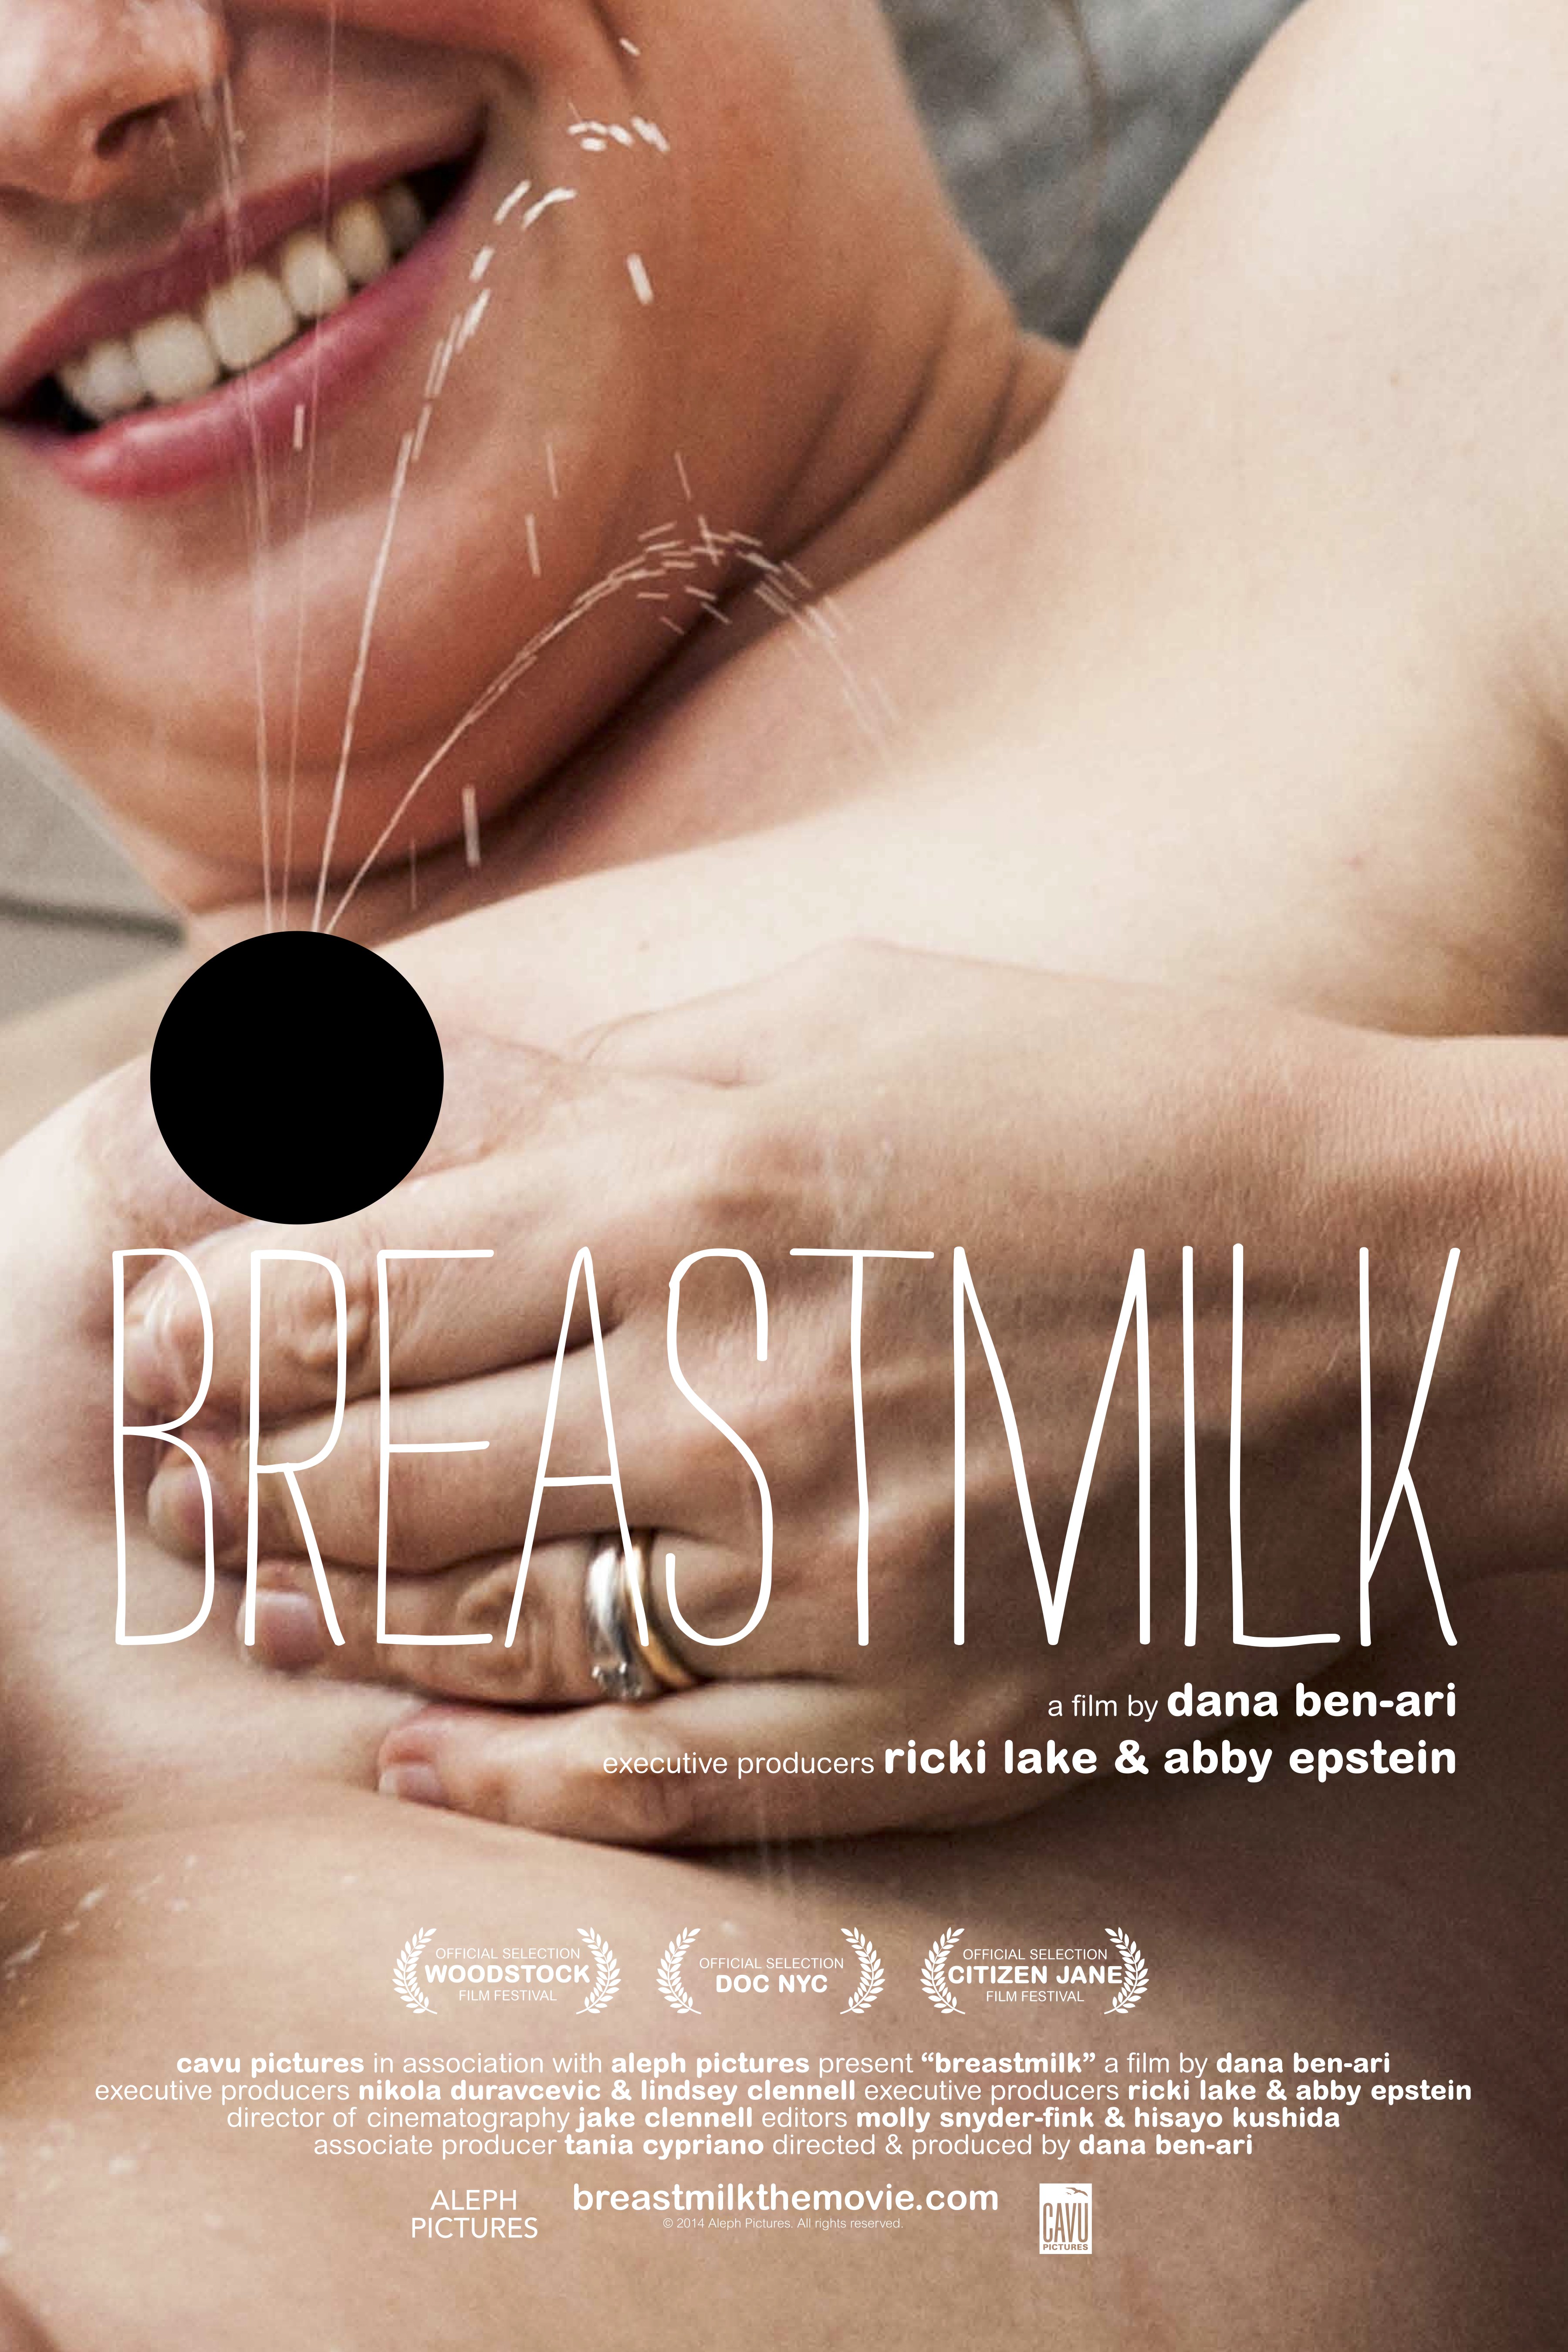 djoko setiono add neighbors breast milk scene photo